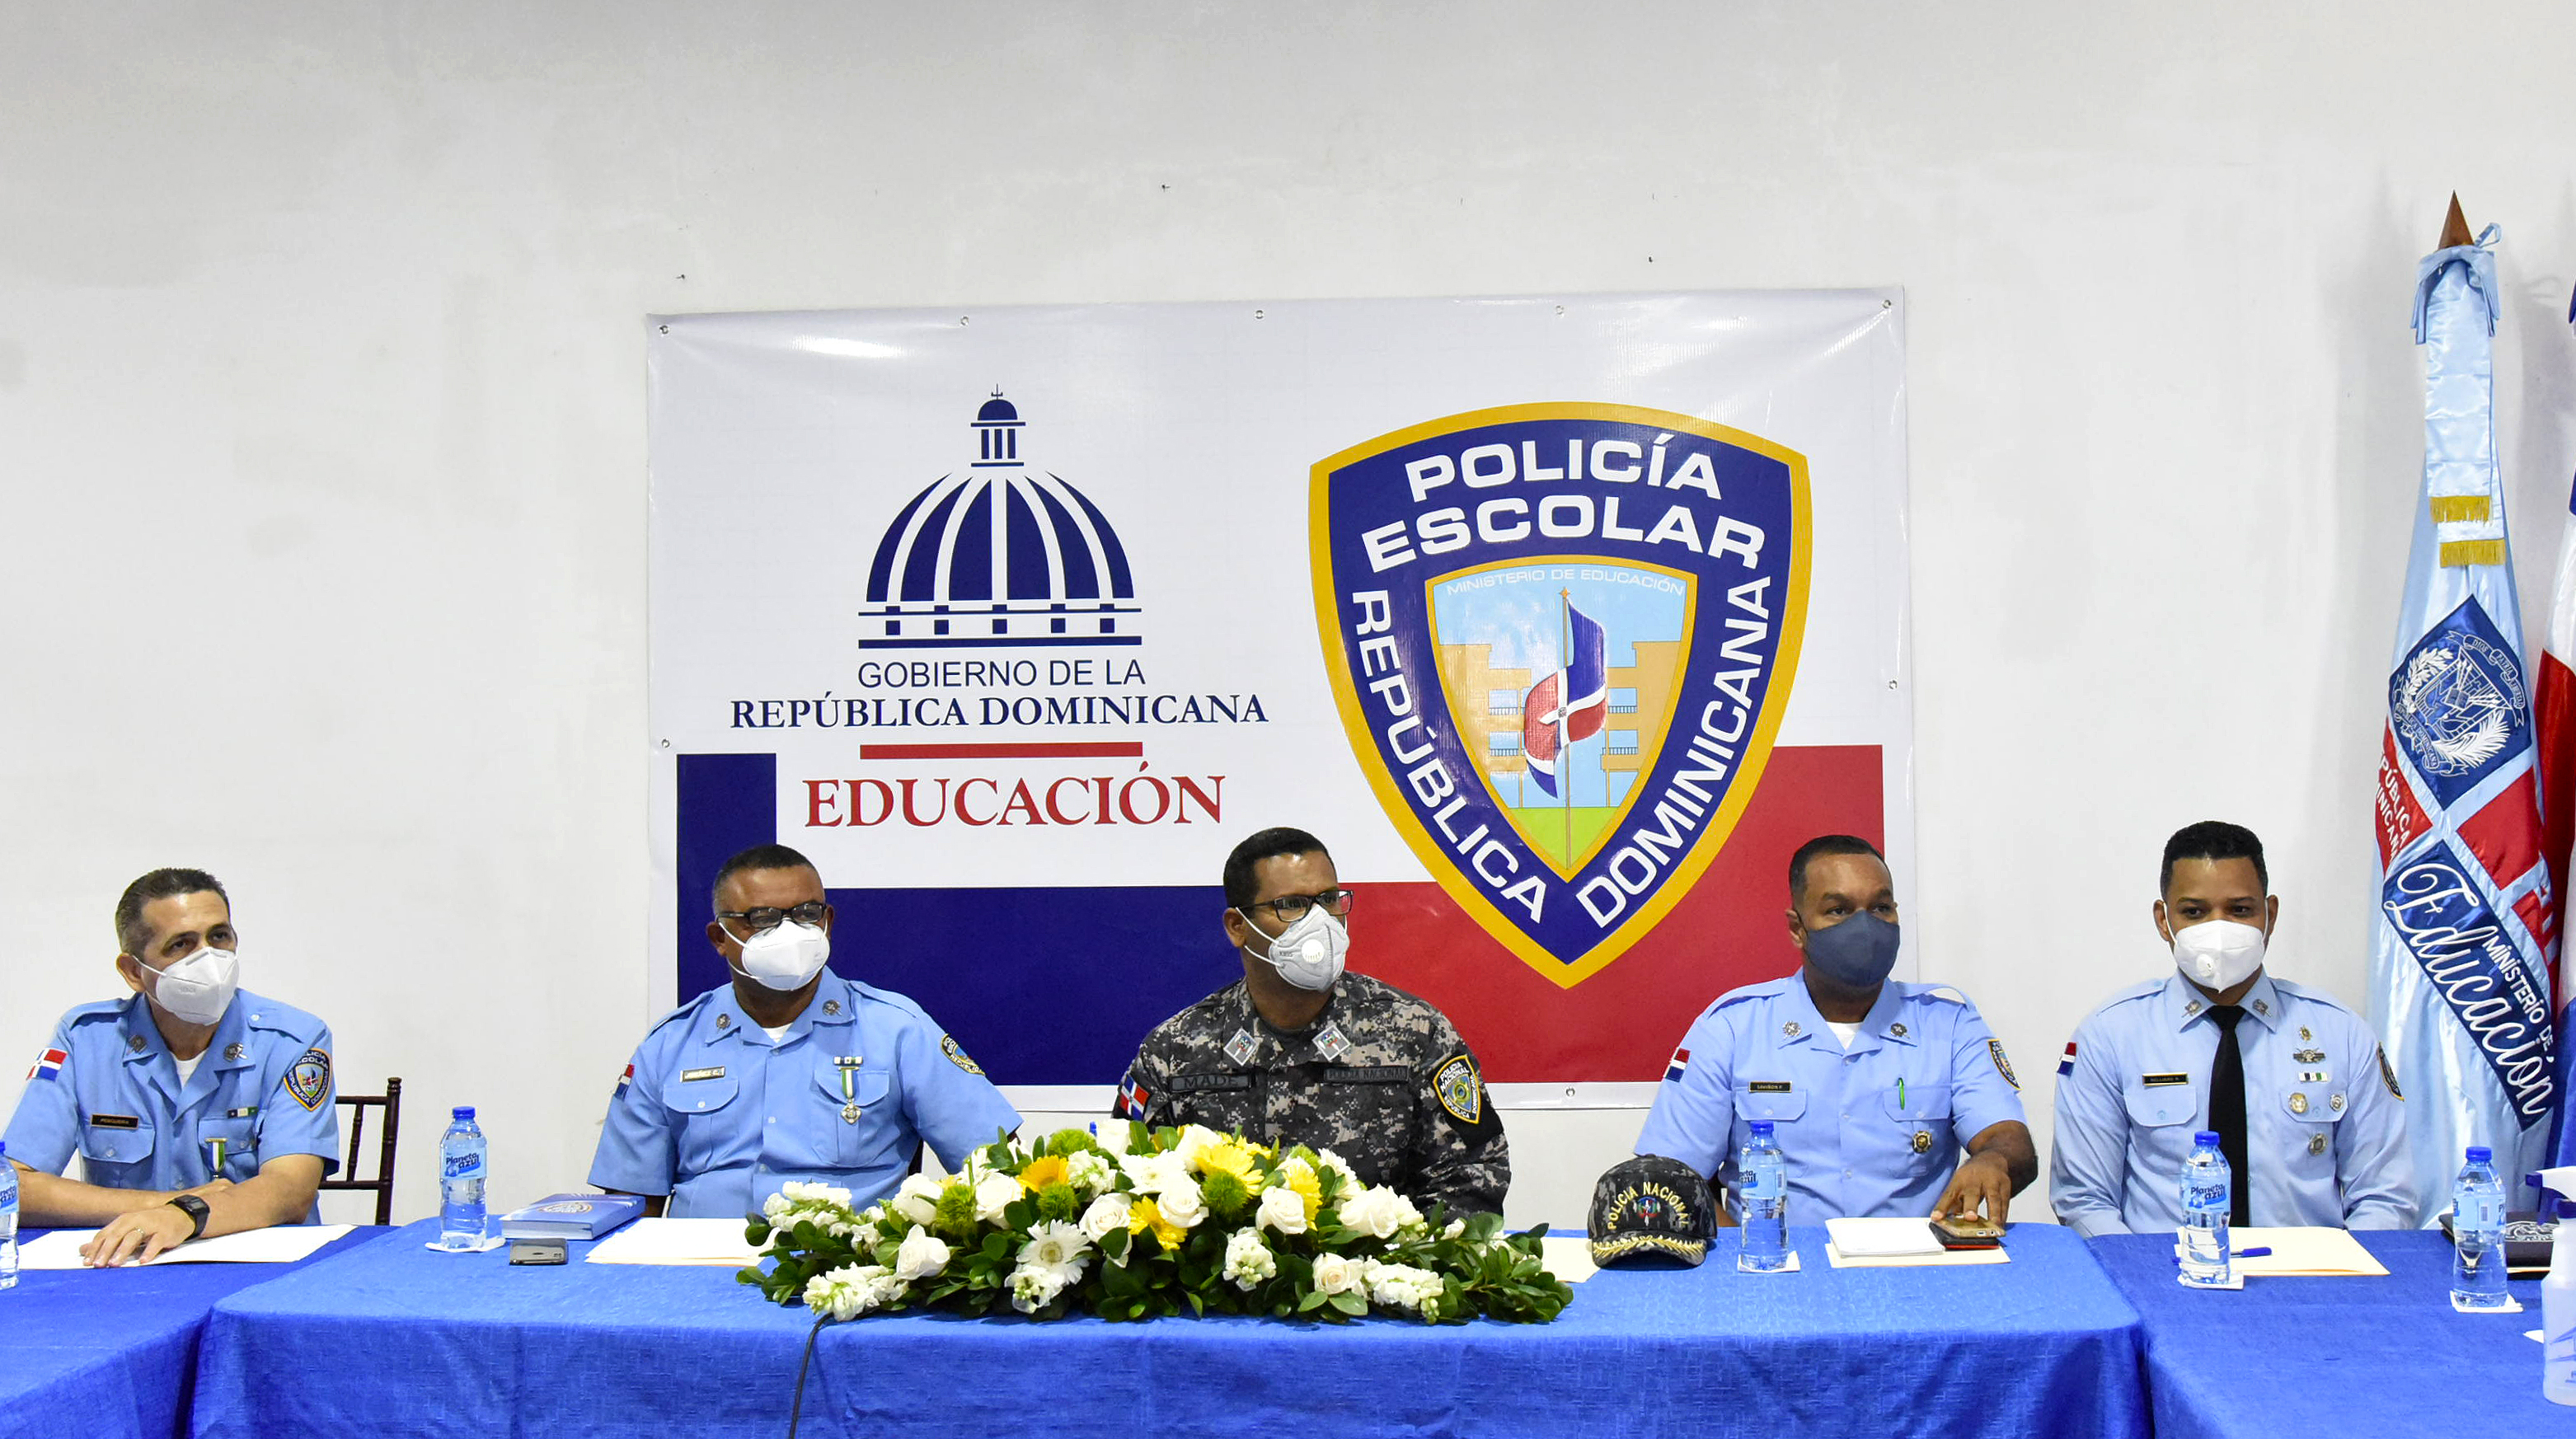 Policía Escolar redobla servicios para proteger los equipos tecnológicos en las escuelas